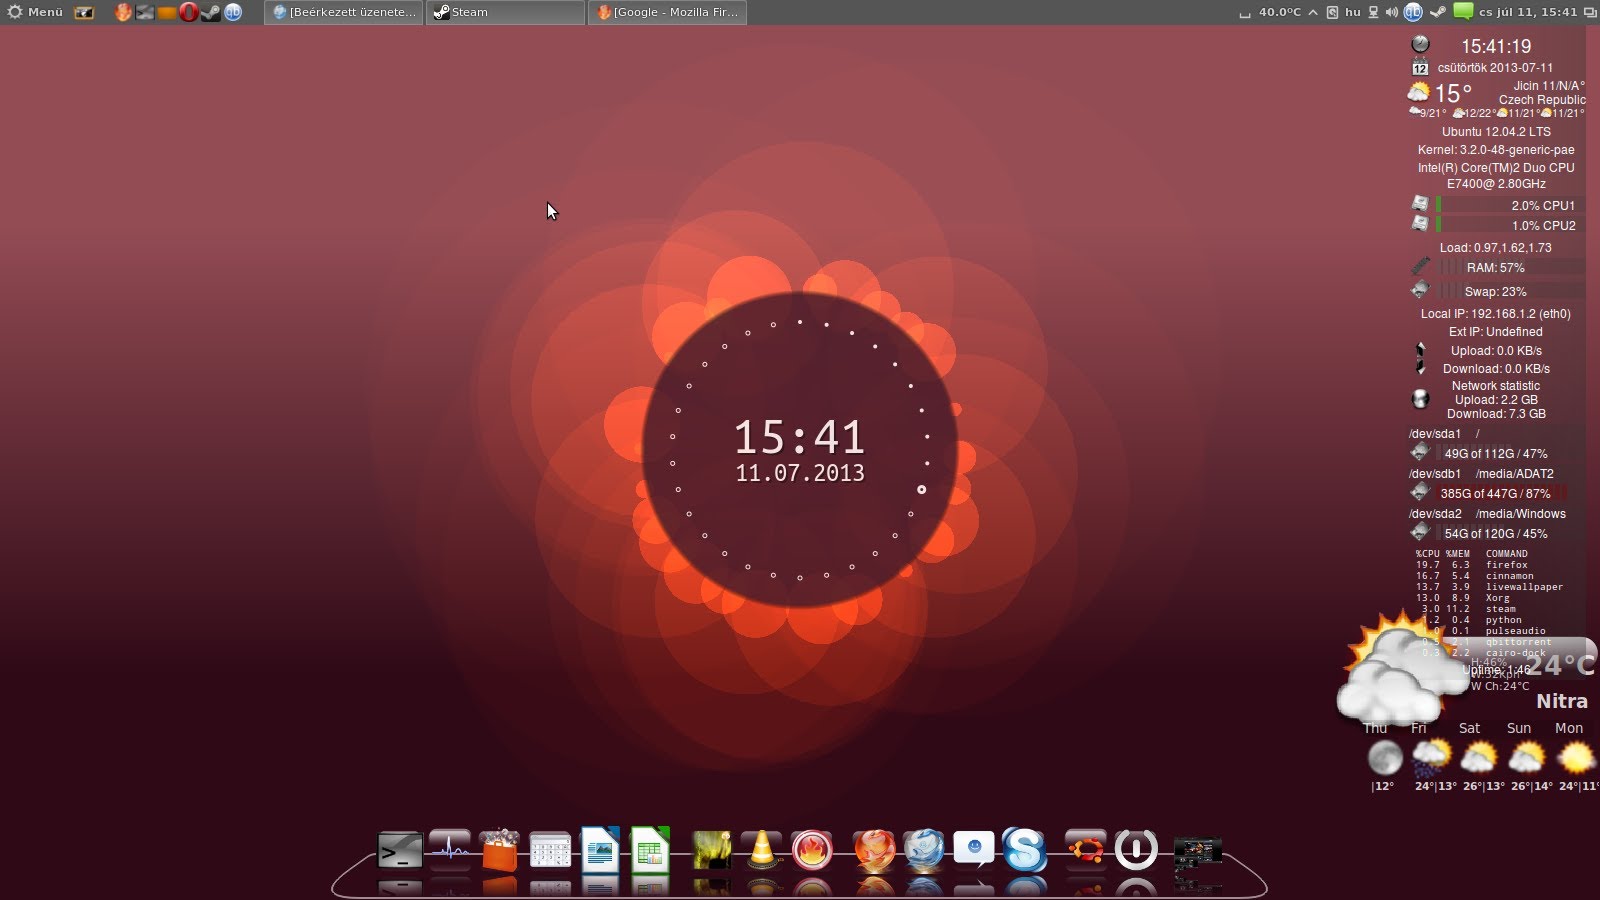 Live Wallpaper For Ubuntu